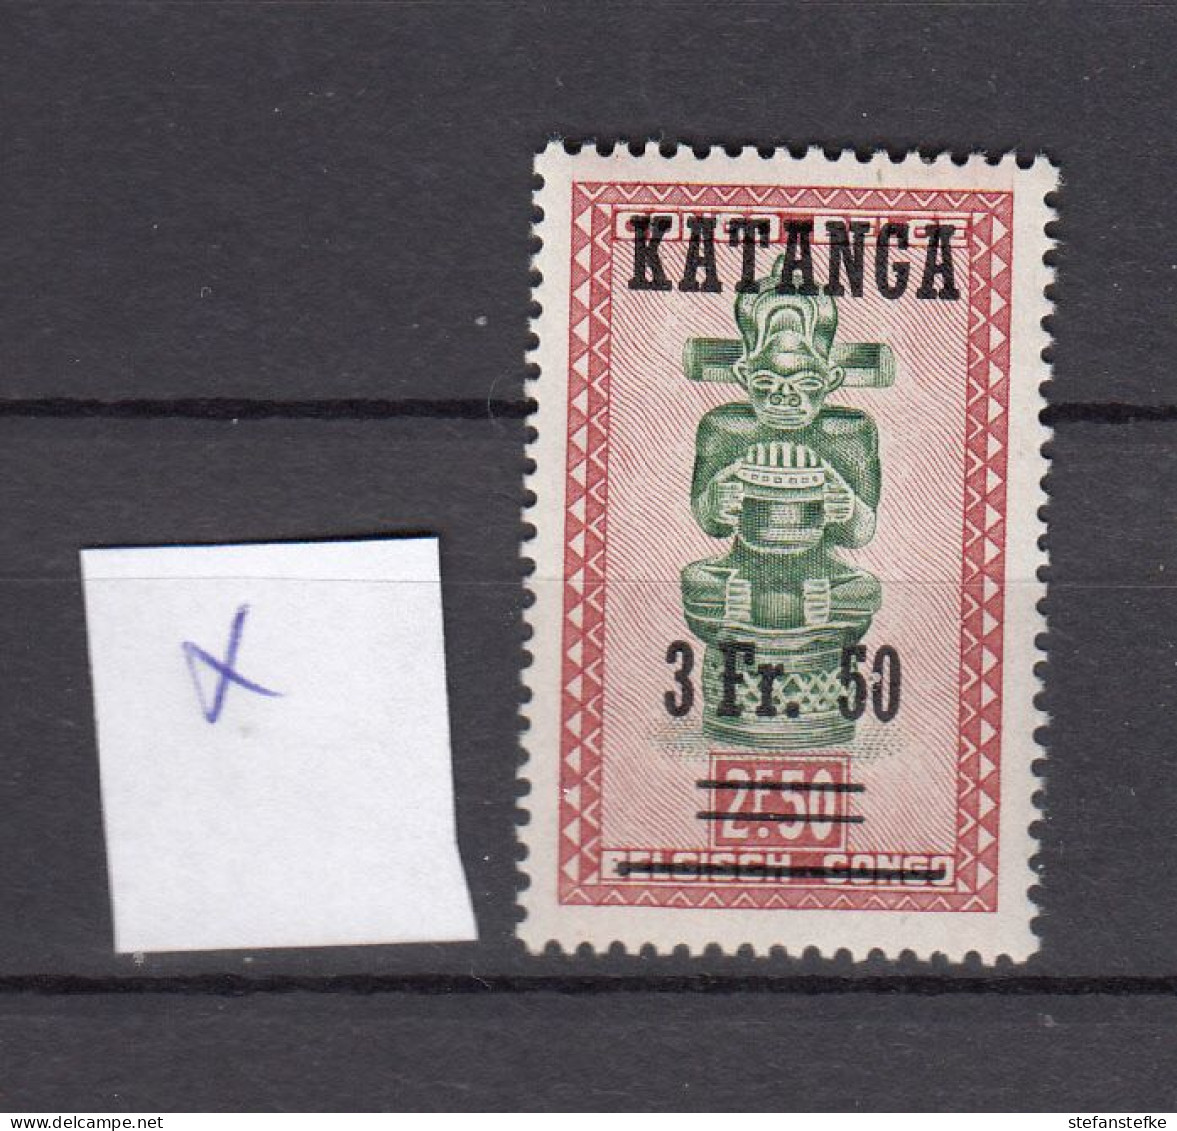 Katanga : Ocb Nr:  19 * MH (zie Scan) - Katanga